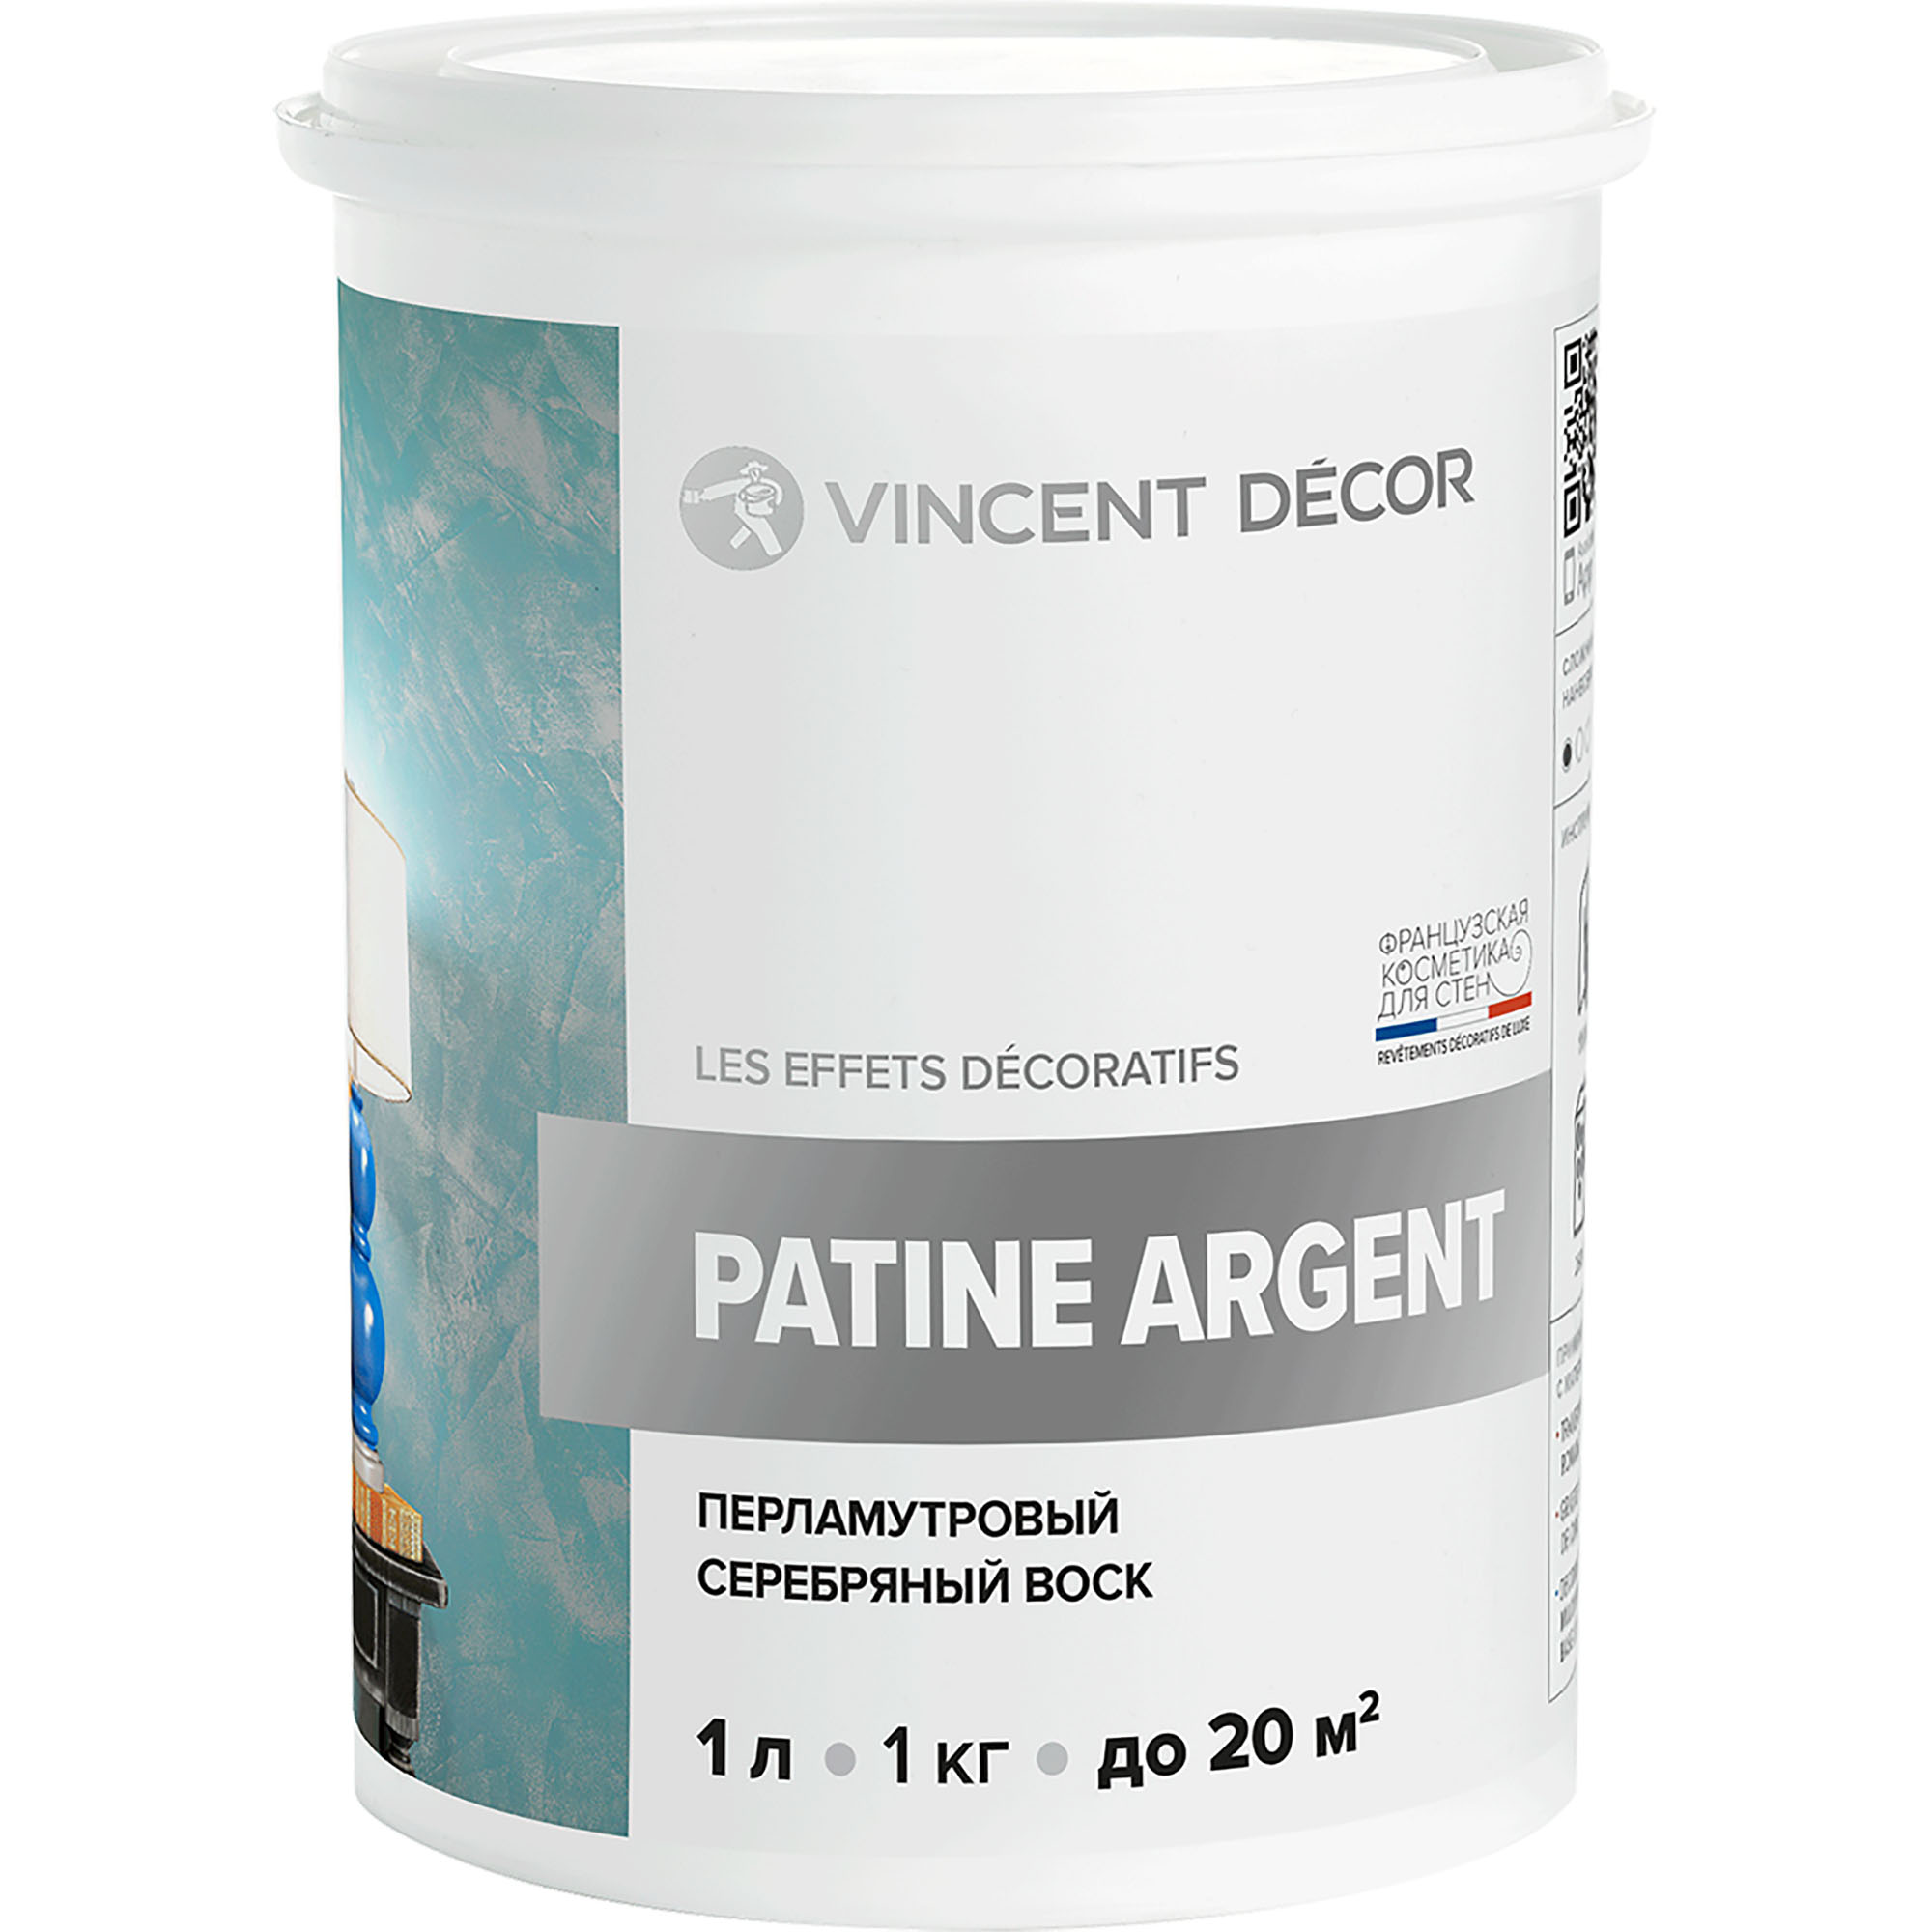 Перламутровый серебряный воск Vincent Decor Patine Argent для декоративных покрытий 1 кг губка для придания блеска и освежения а collonil